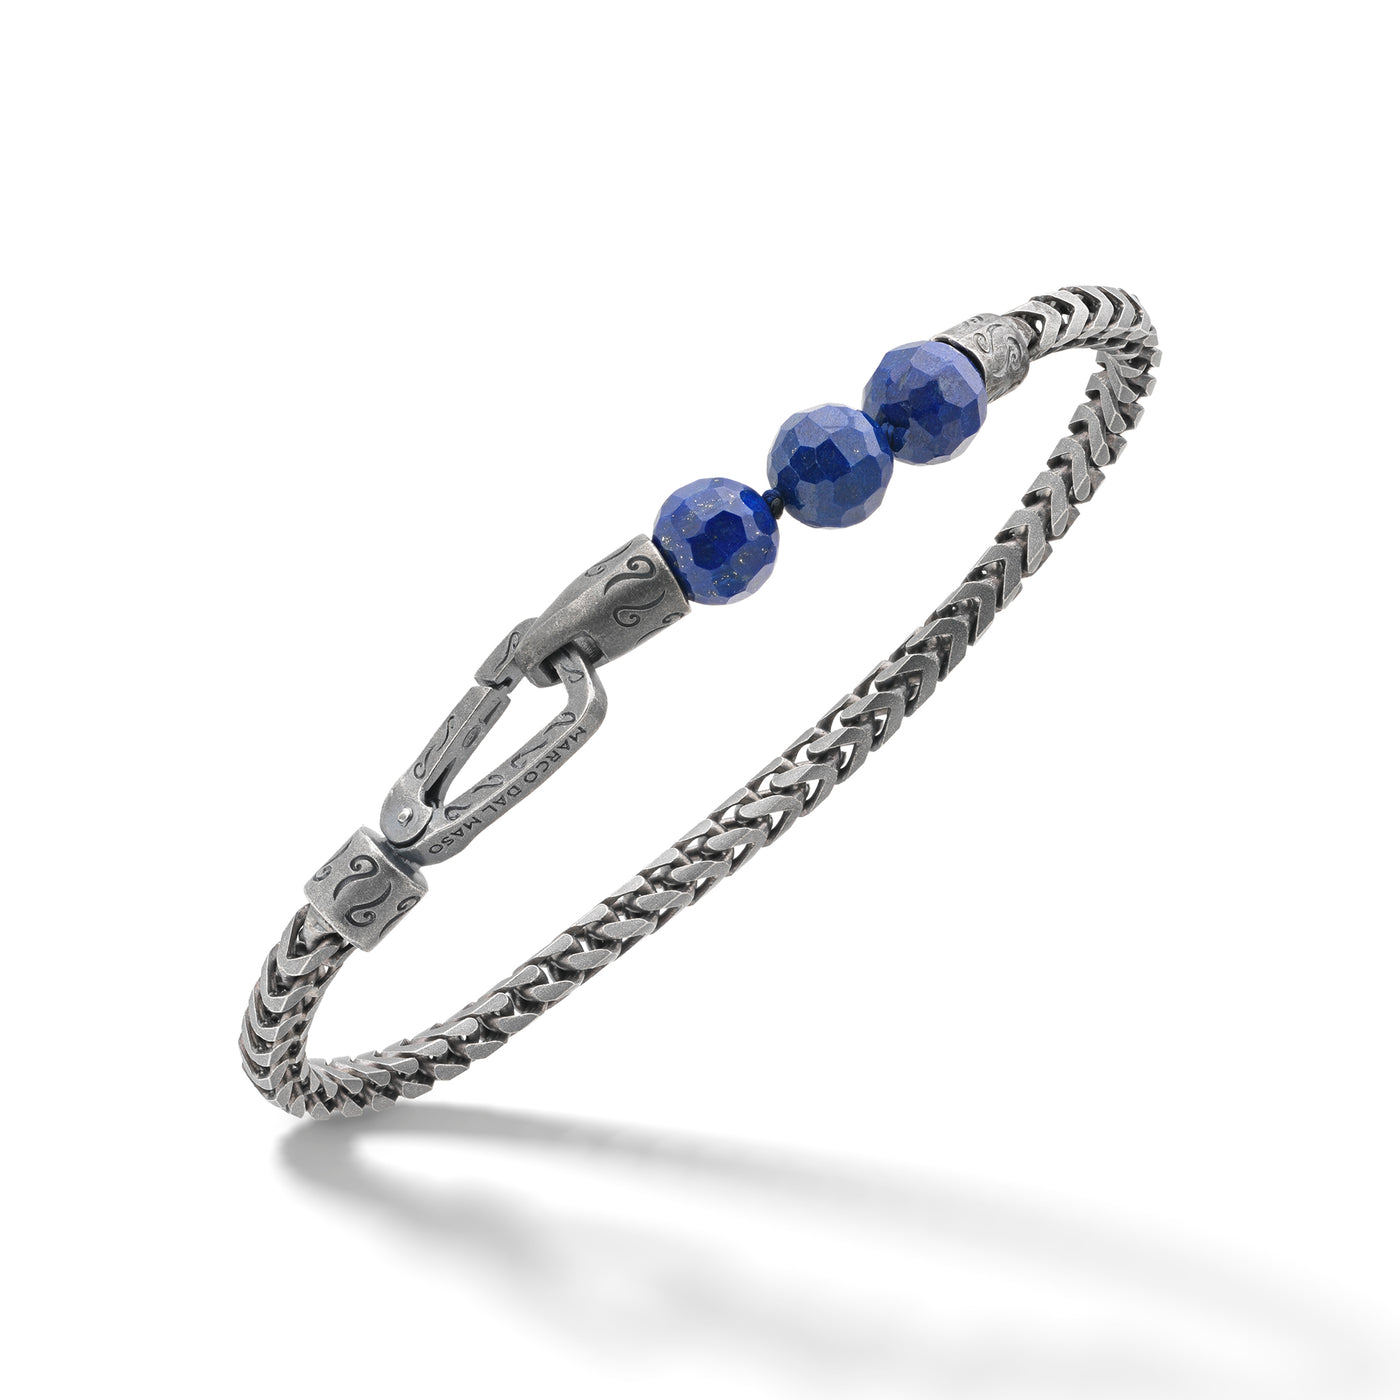 ULYSSES Faceted Beaded Lapis Chain Single Bracelet